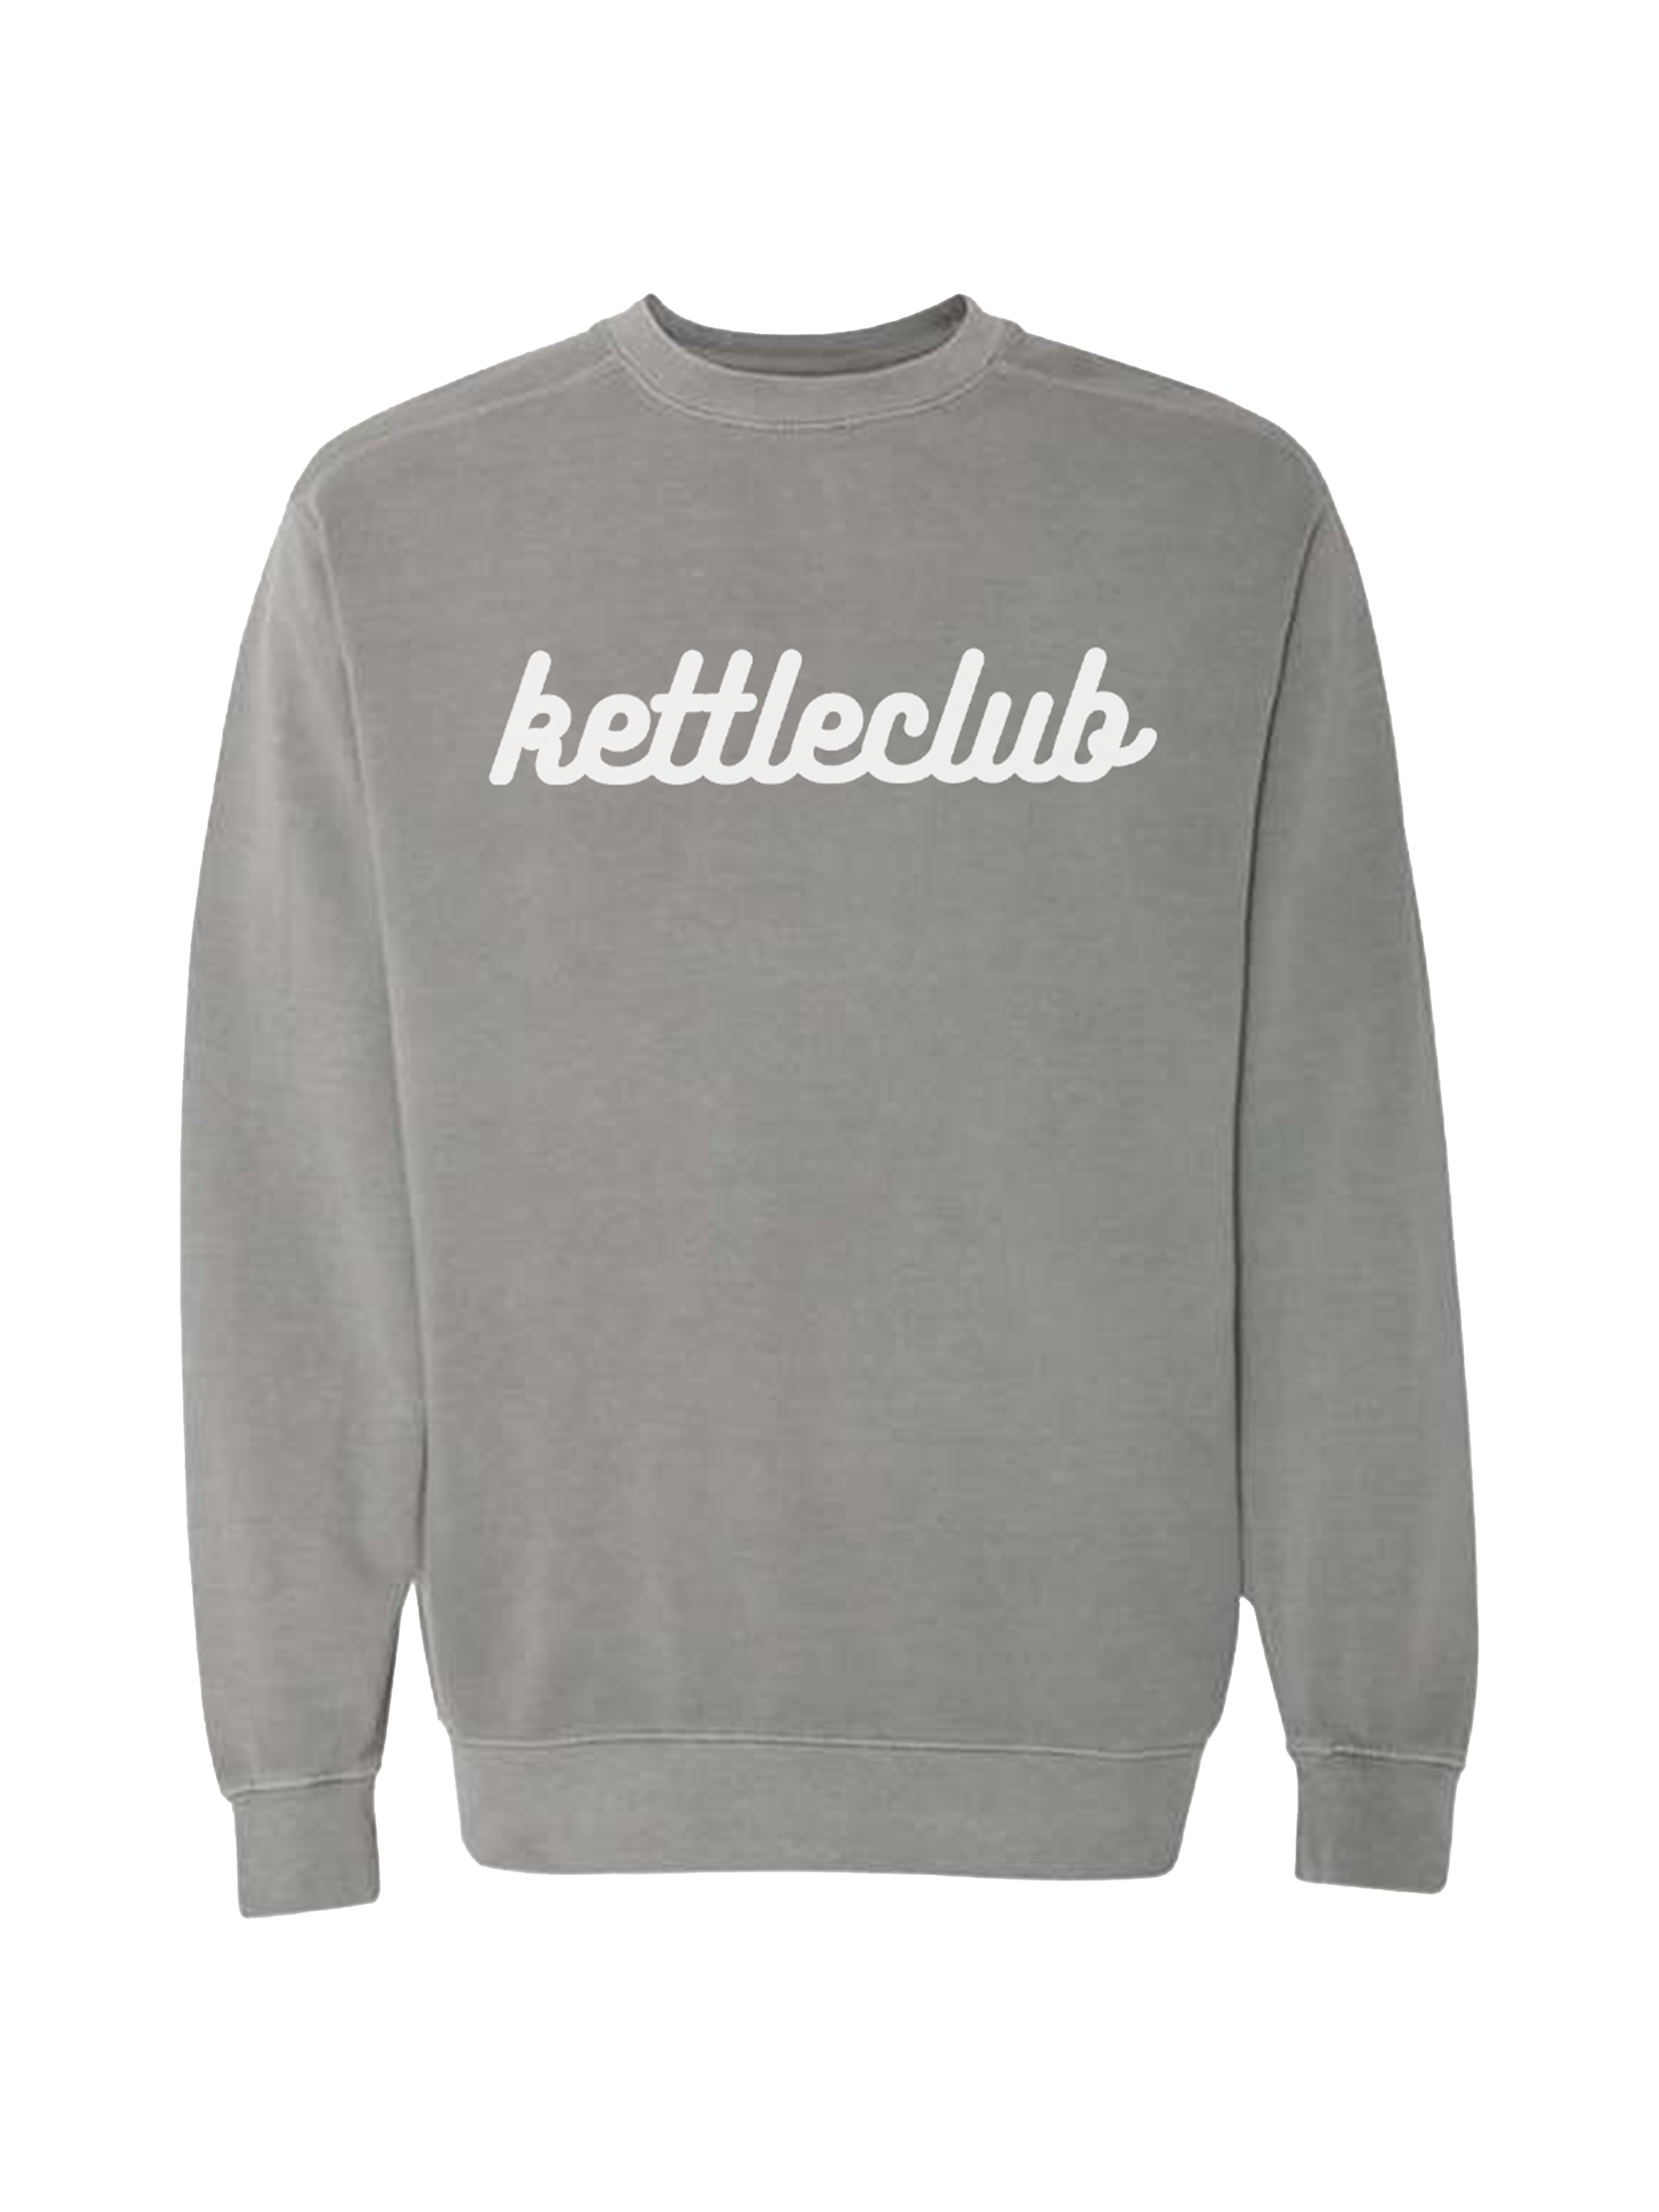 Kettleclub Comfort Colors Crewneck - Grey